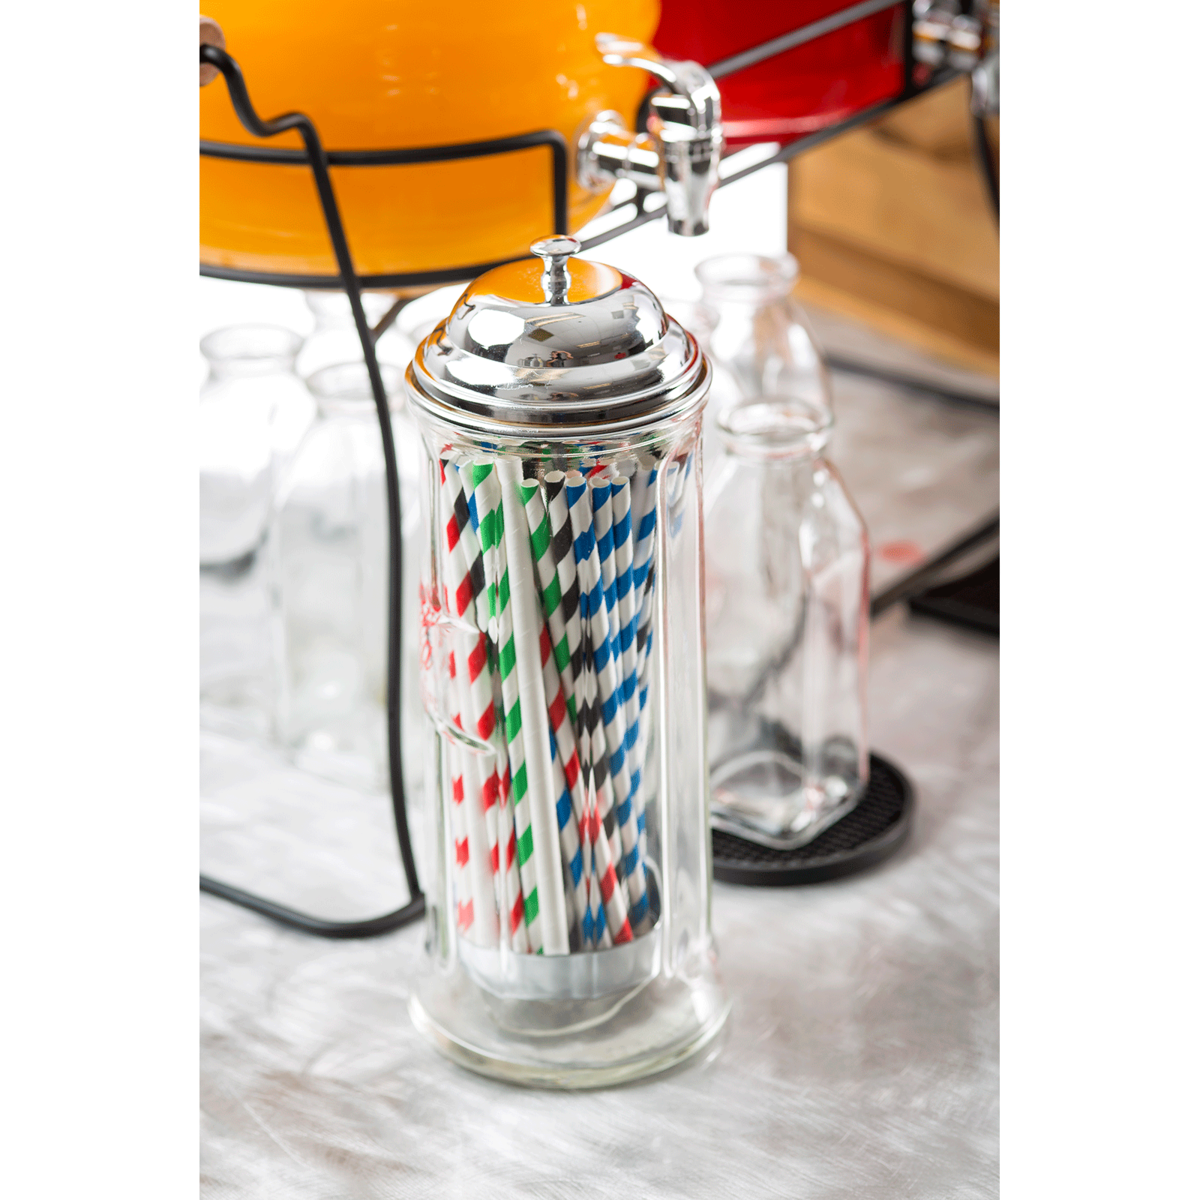 custom glass straw holder dispenser for